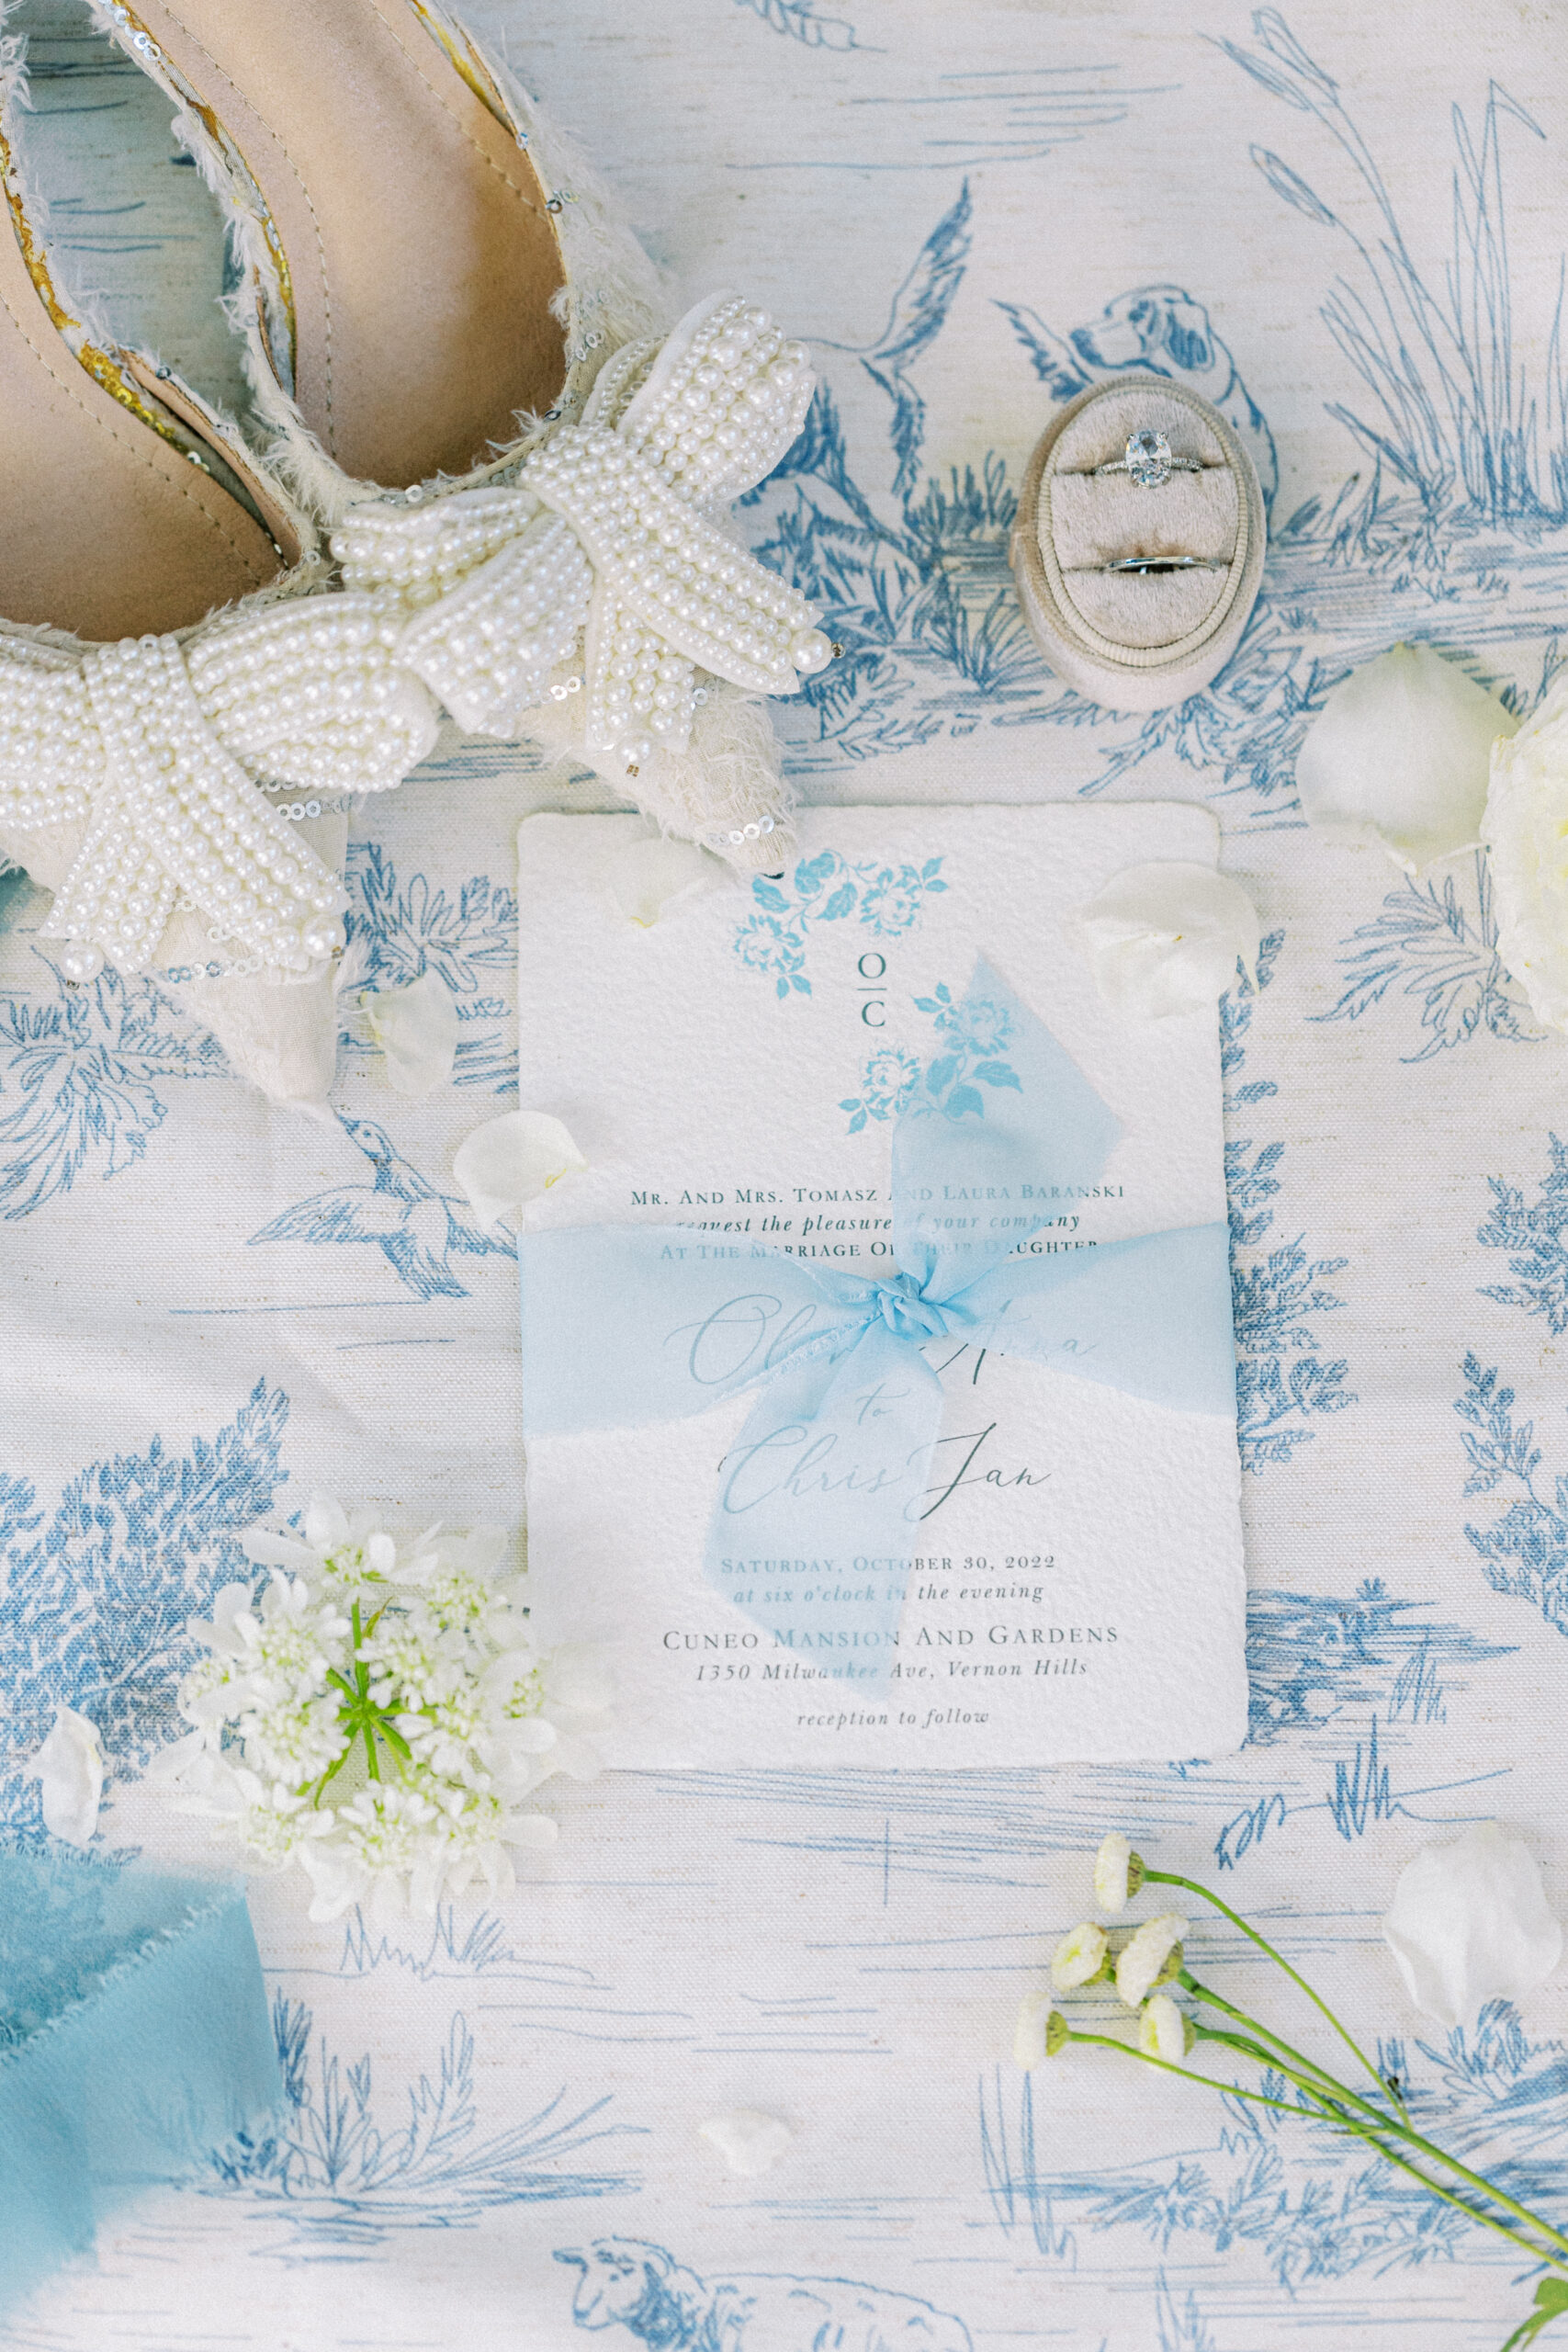 Wedding details on a flat lay mat